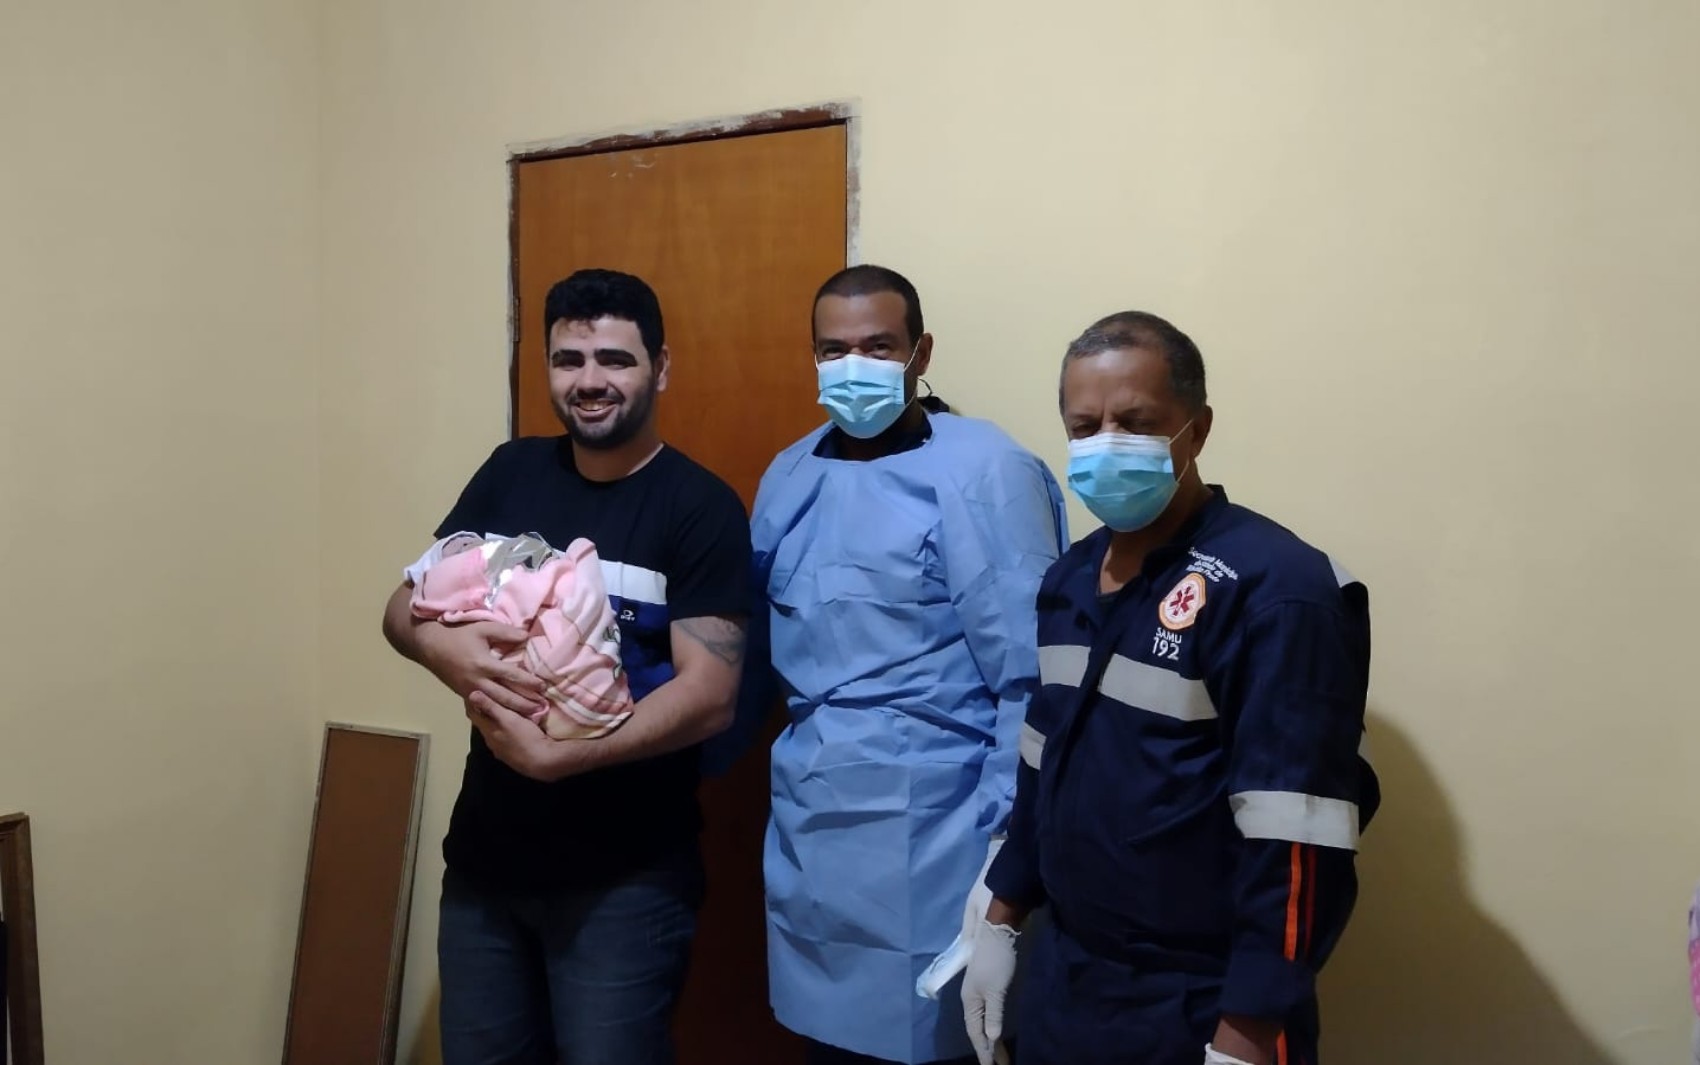 De surpresa, marido auxilia parto da mulher dentro de casa em Ribeirão Preto, SP: 'Não deu tempo de nada'